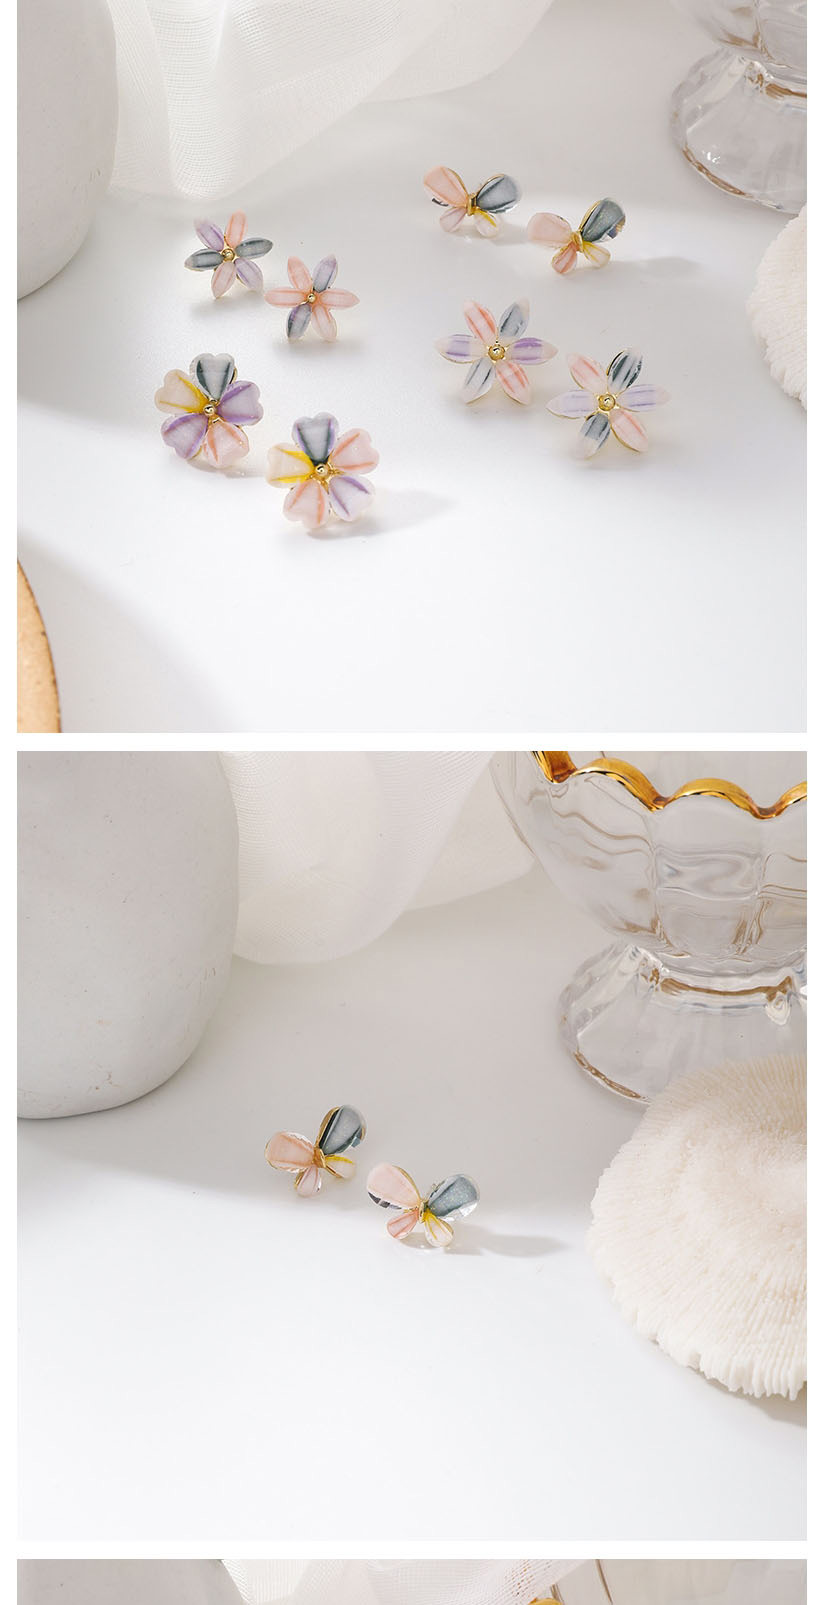 Fashion Six-petal Flower (small) Artificial Crystal Flower Alloy Earrings,Stud Earrings